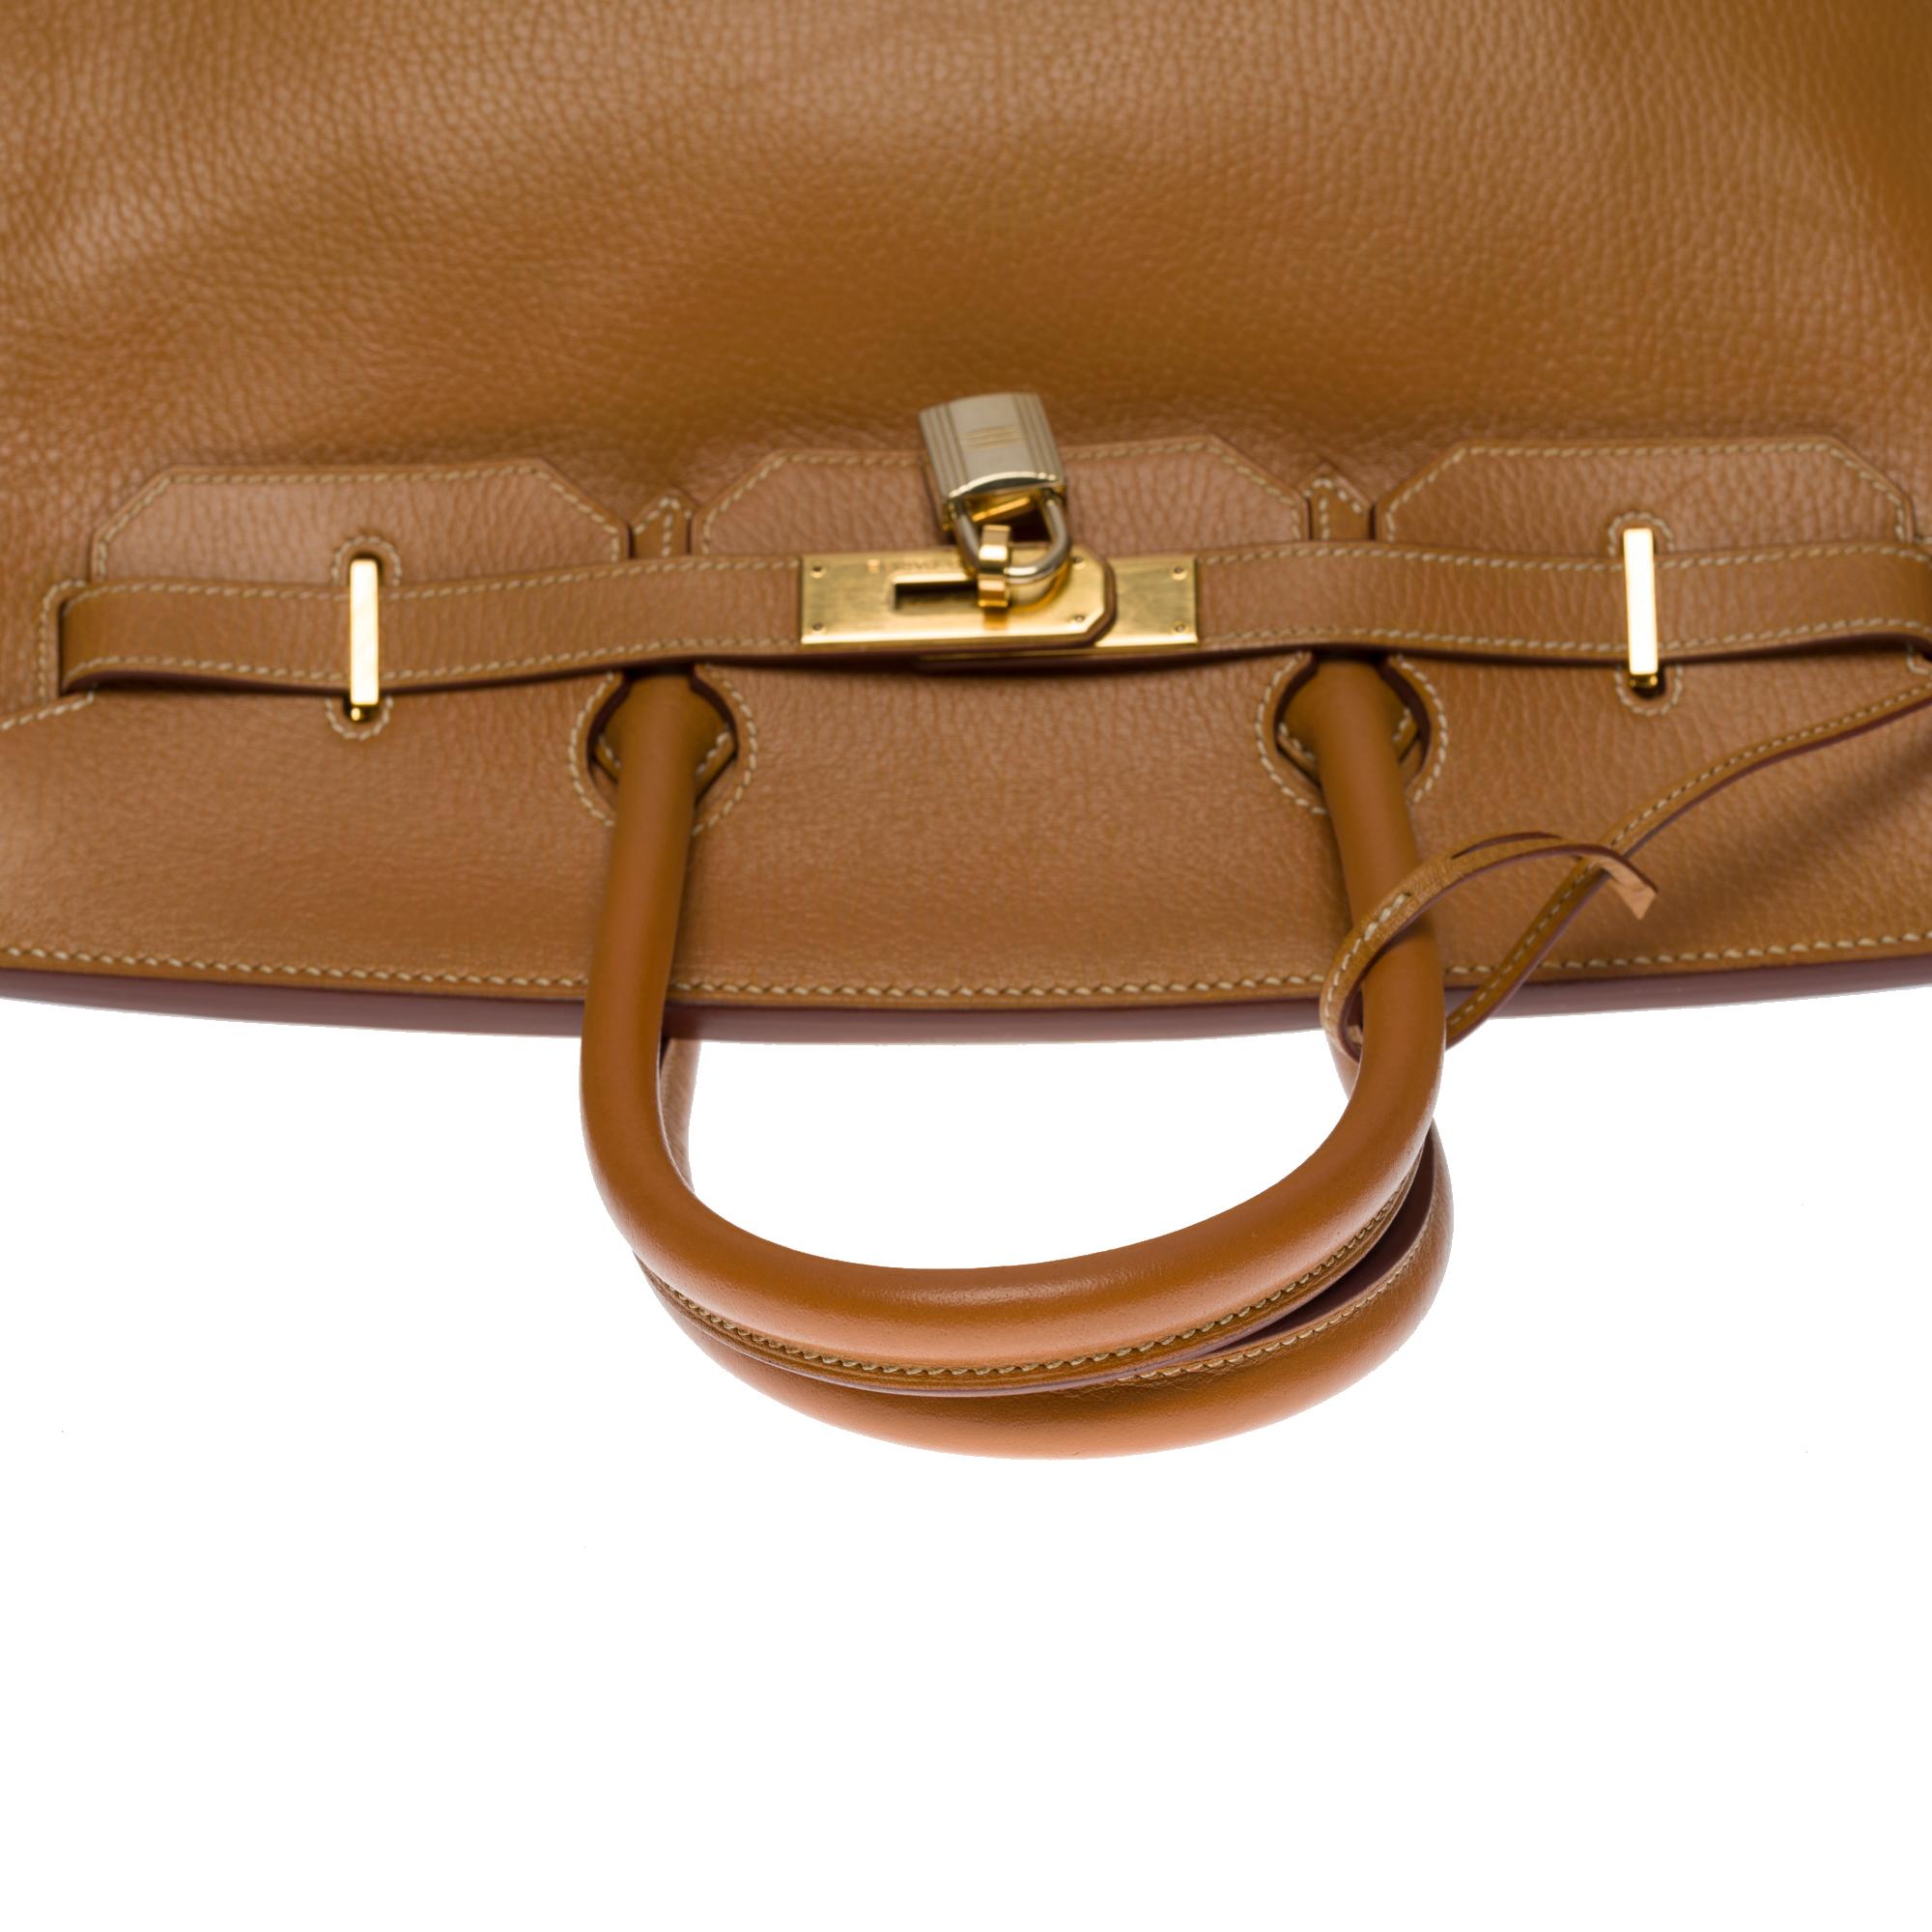 Amazing Hermès Birkin 35 handbag in Gold Vache Ardennes leather, GHW 3